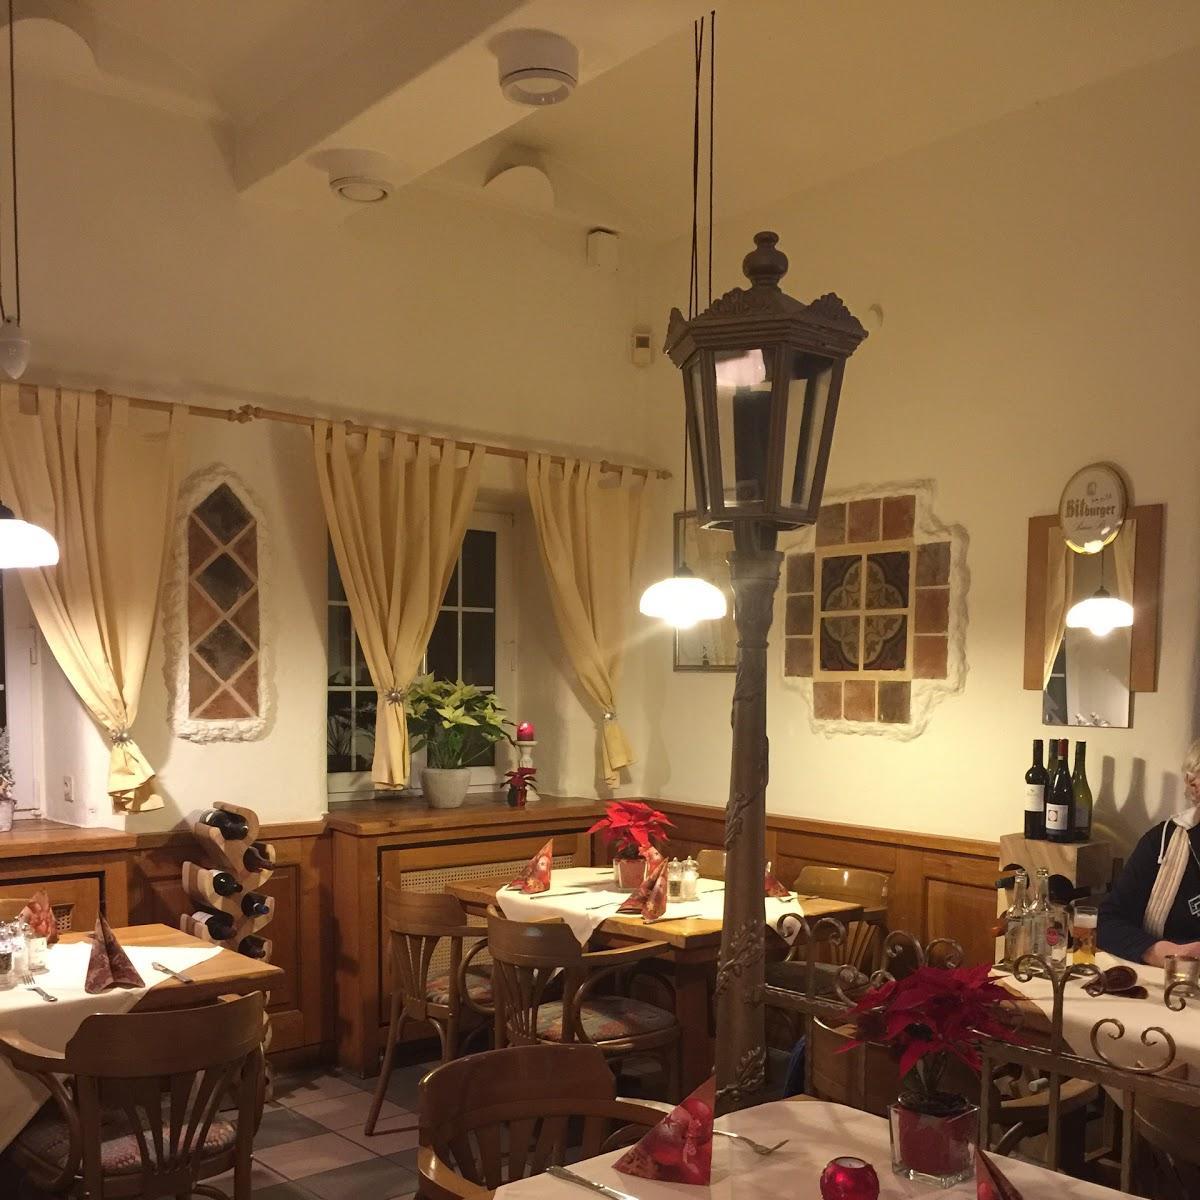 Restaurant "Geyener-Brauhaus" in Pulheim